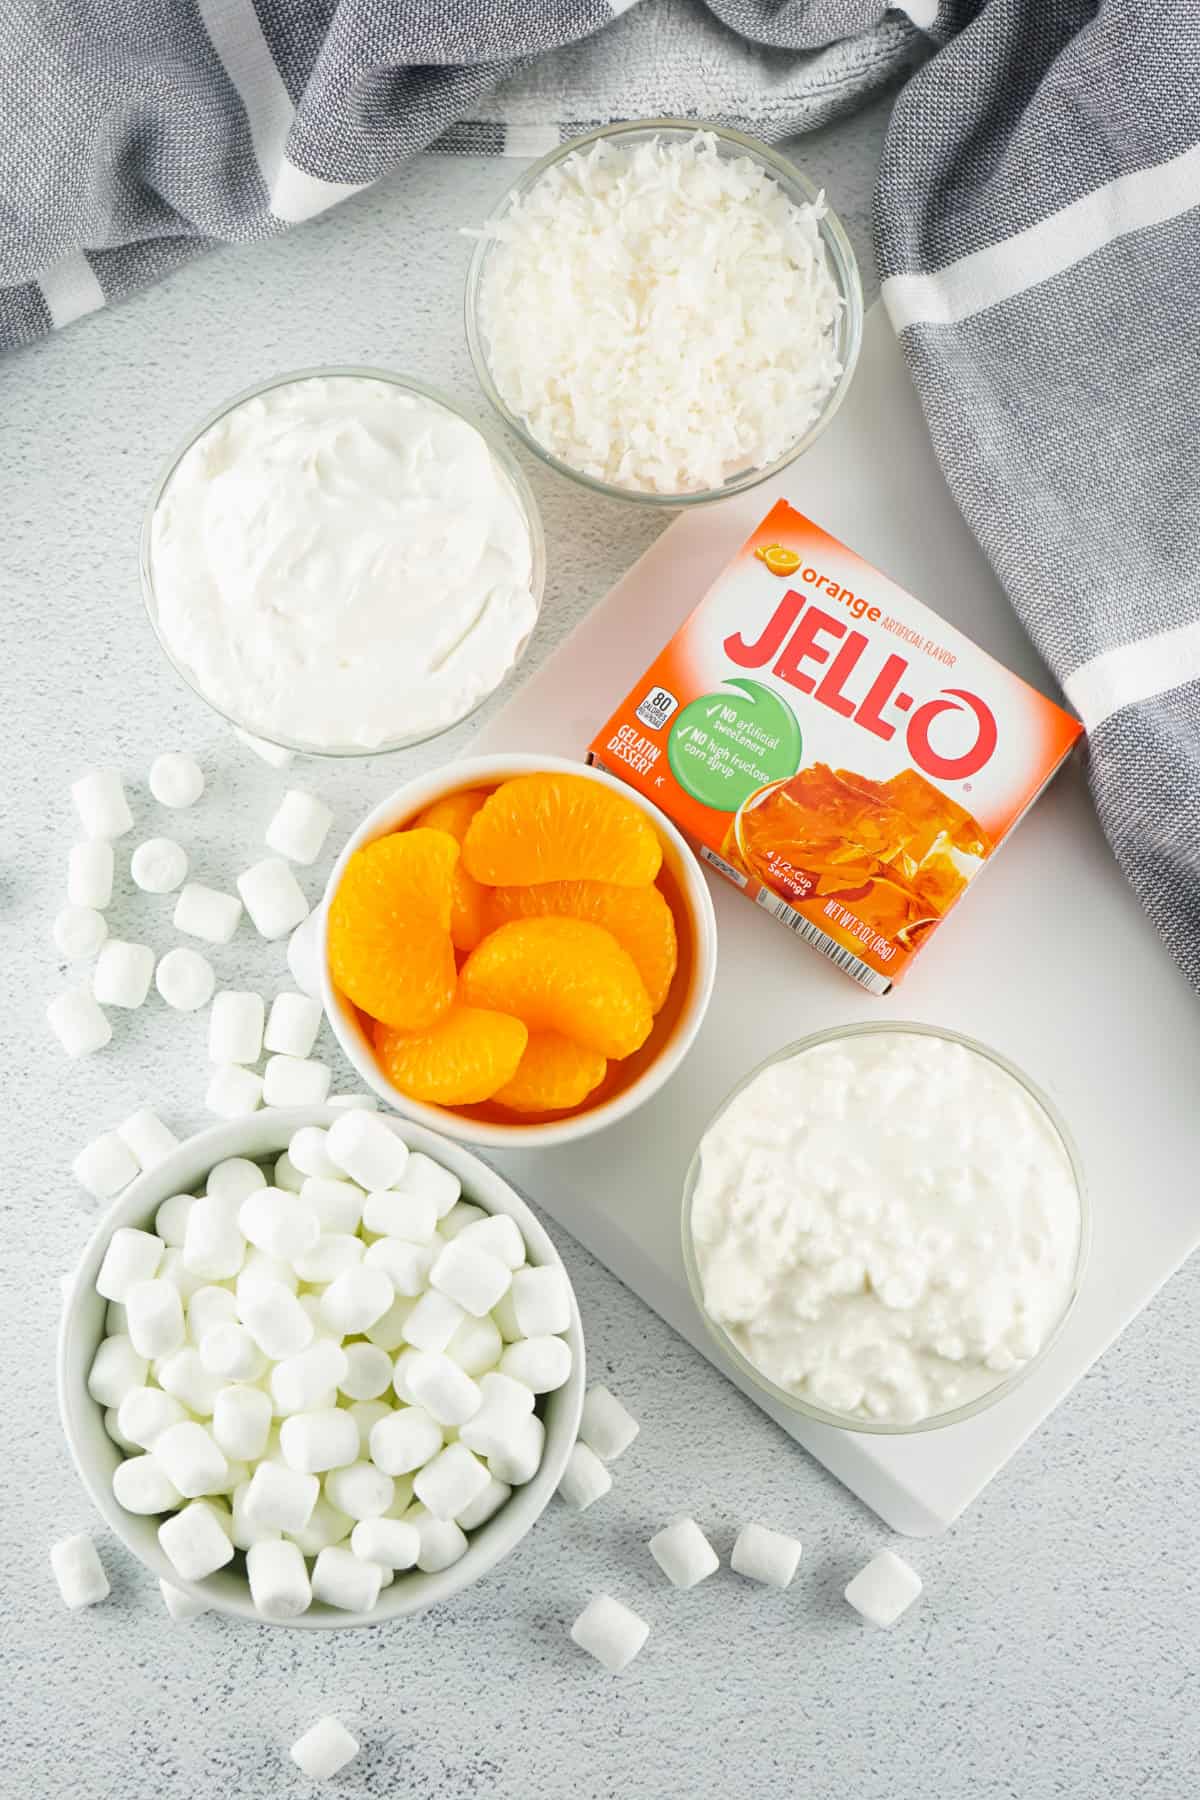 ingredients for making orange fluff salad.